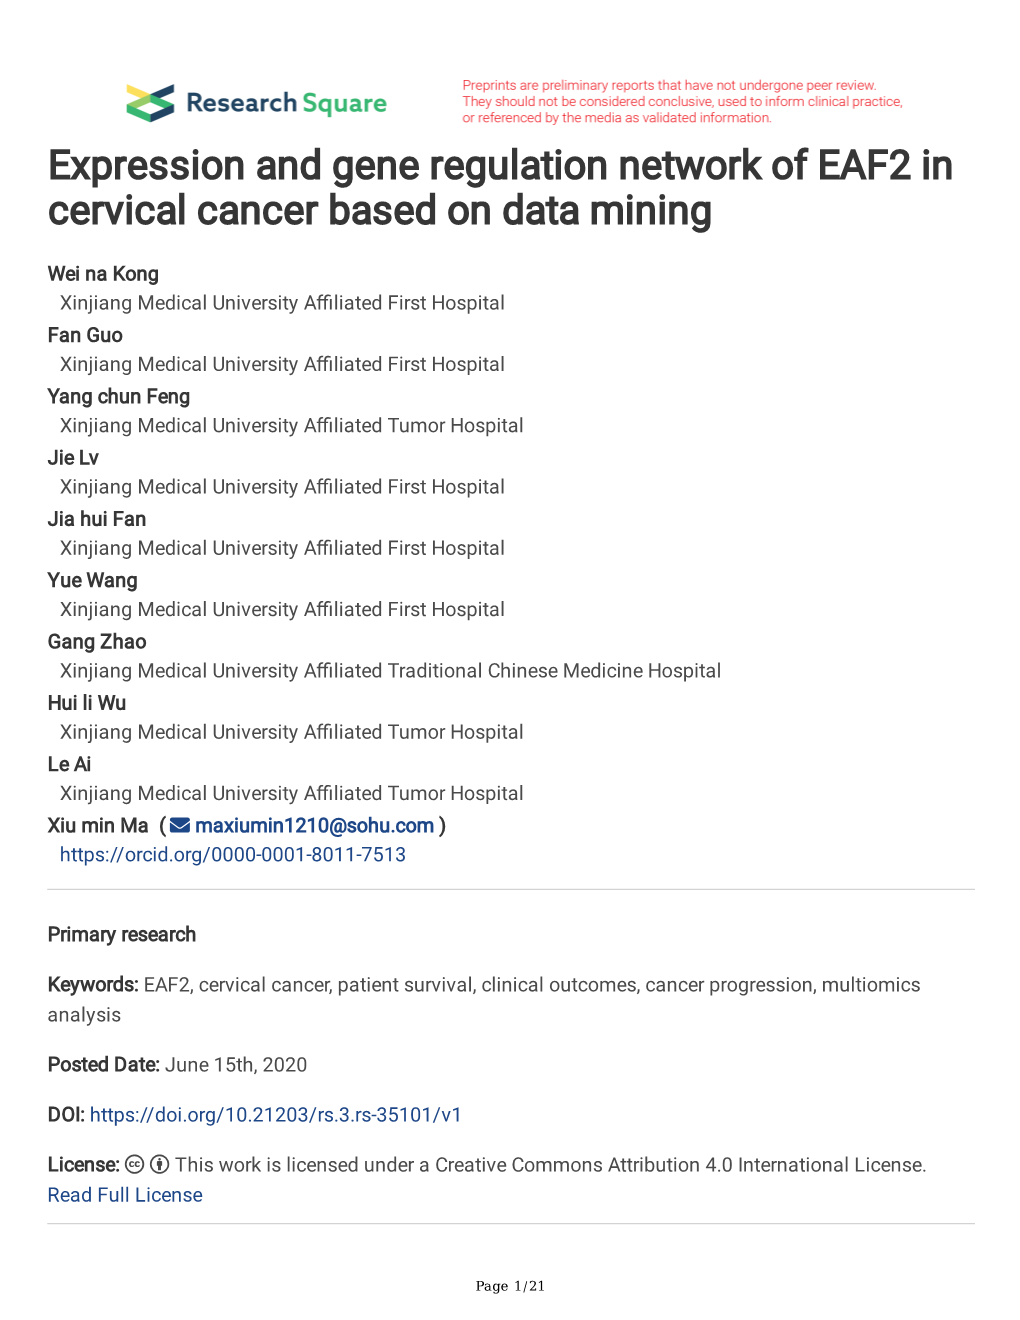 Expression and Gene Regulation Network of EAF2 in Cervical Cancer Based on Data Mining